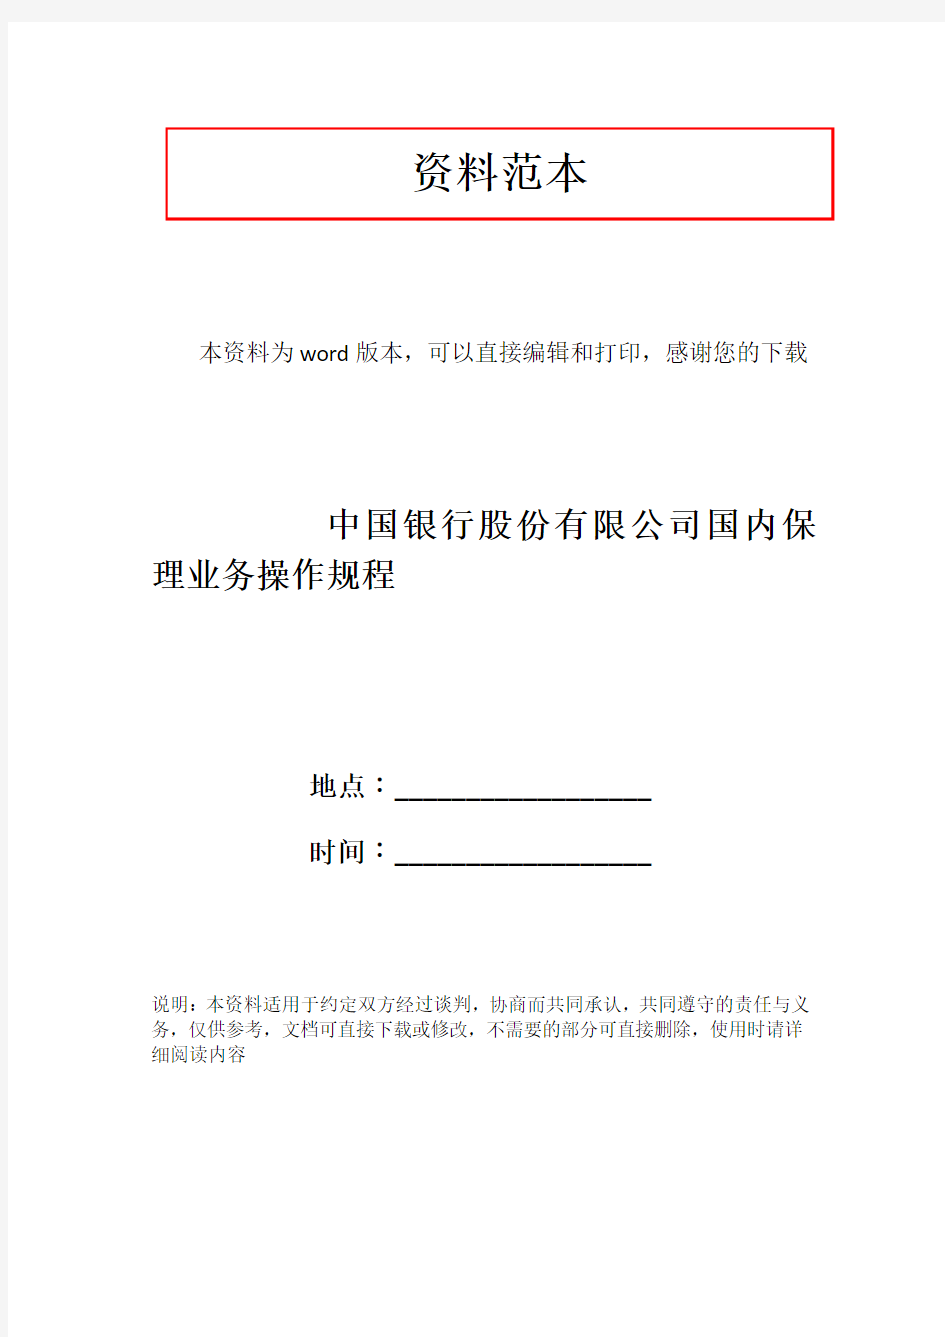 中国银行股份有限公司国内保理业务操作规程